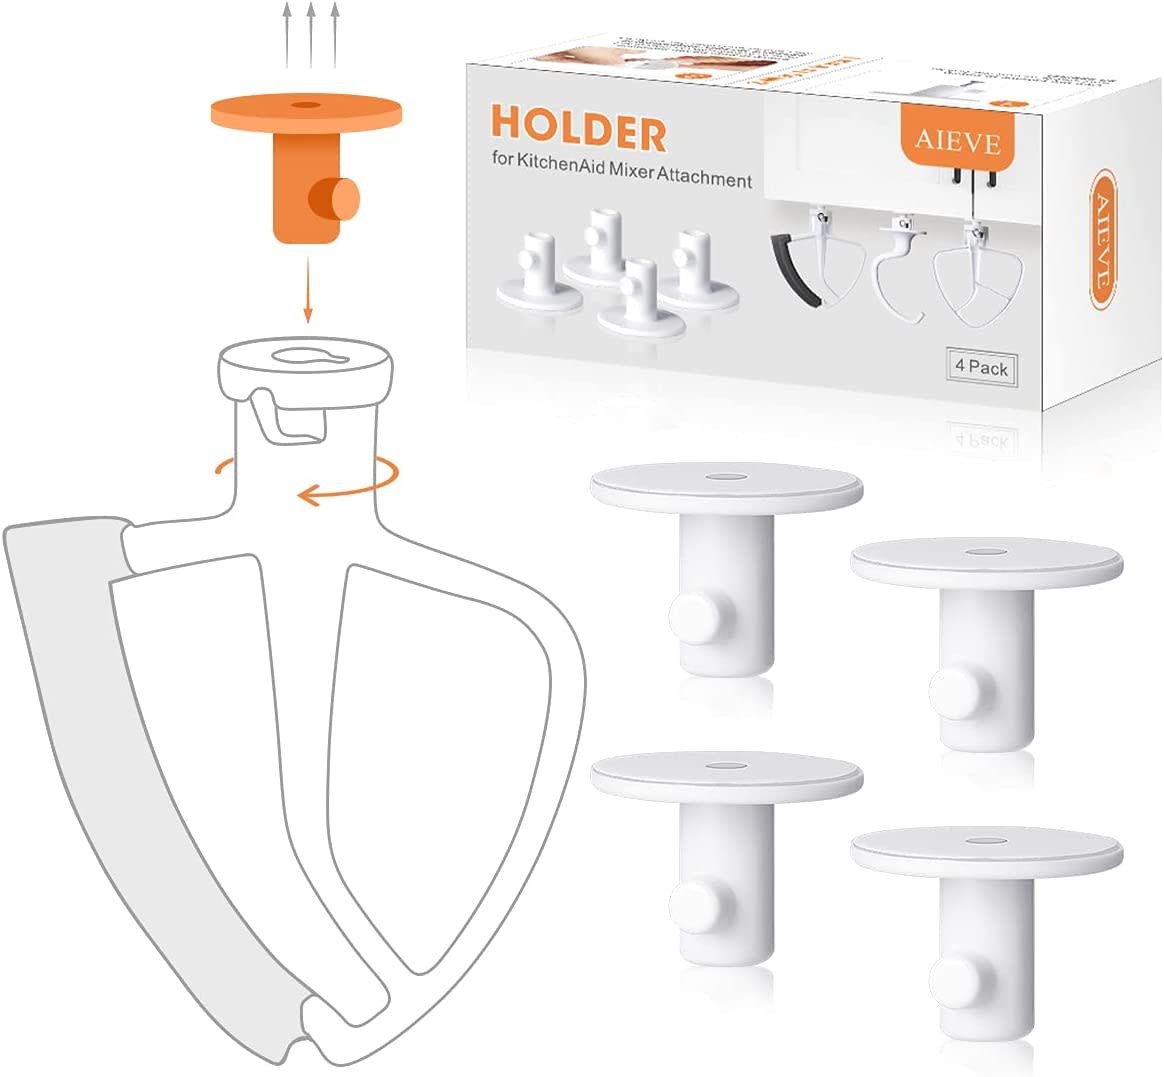 4-Pack KitchenAid Mixer Attachment Holder Organizer Hanger